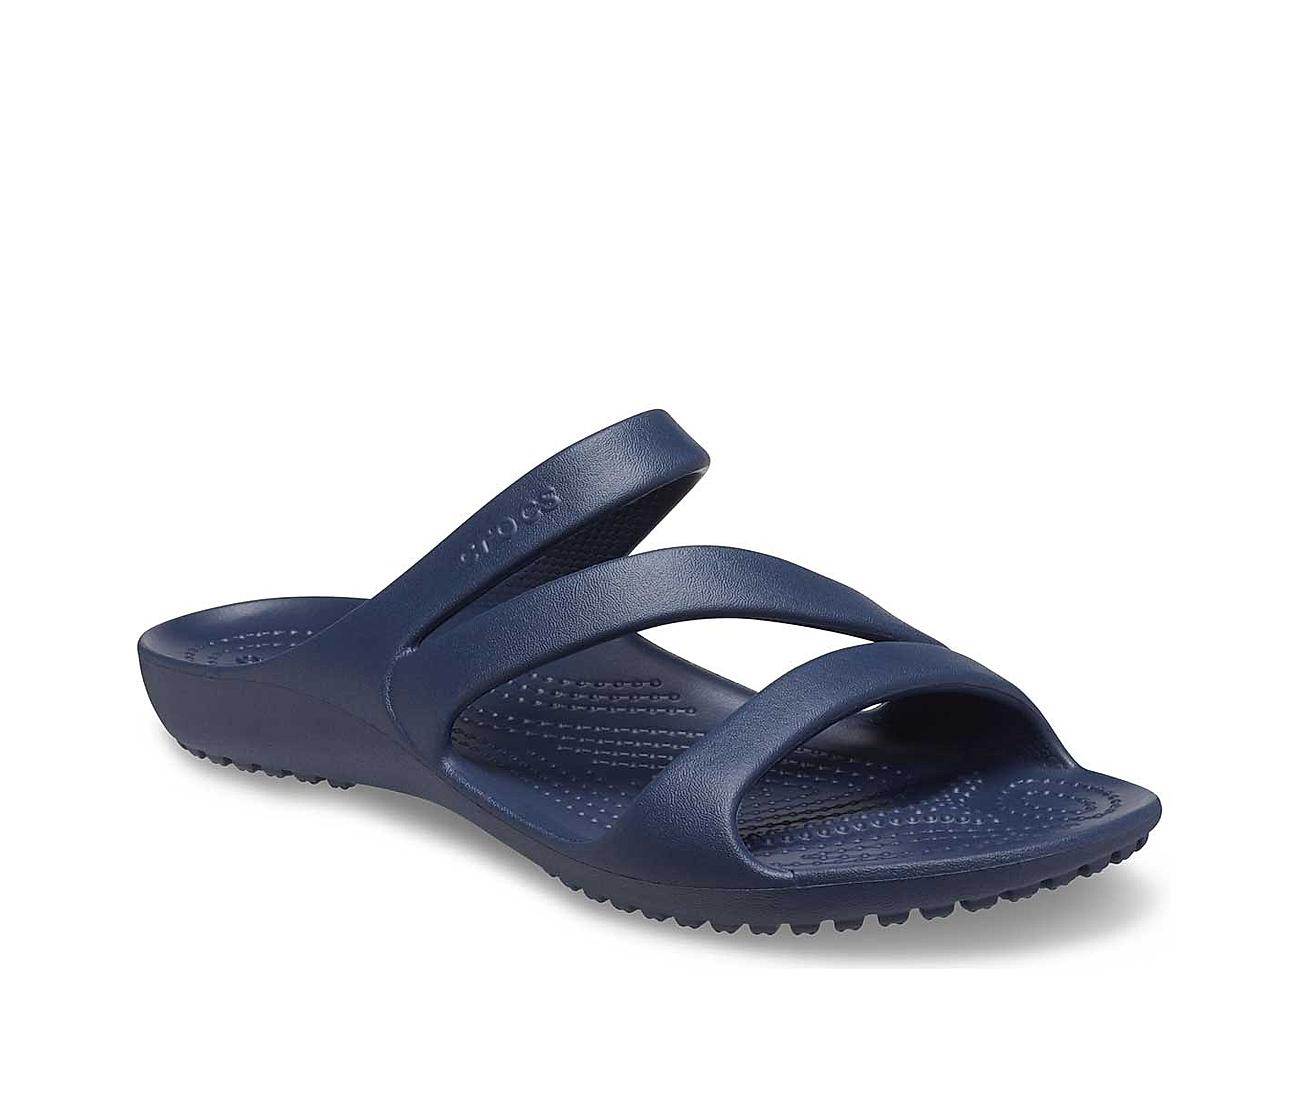 Buy Crocs Black Unisex Kids Baya Clog Sandals Online at Regal Shoes |  8775710-hkpdtq2012.edu.vn